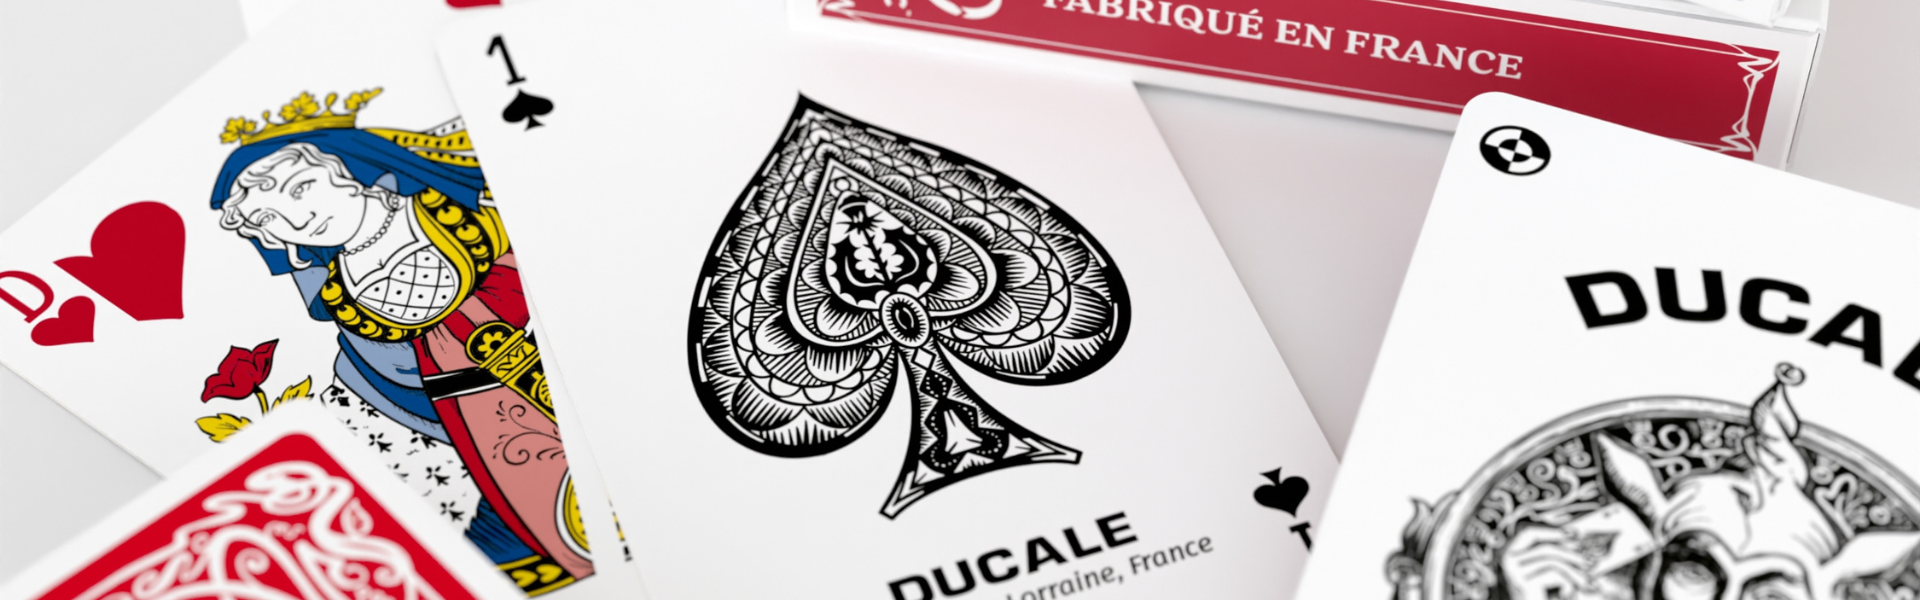 Ducale, le jeu Français - Cartes à jouer et jeux fun pour petits